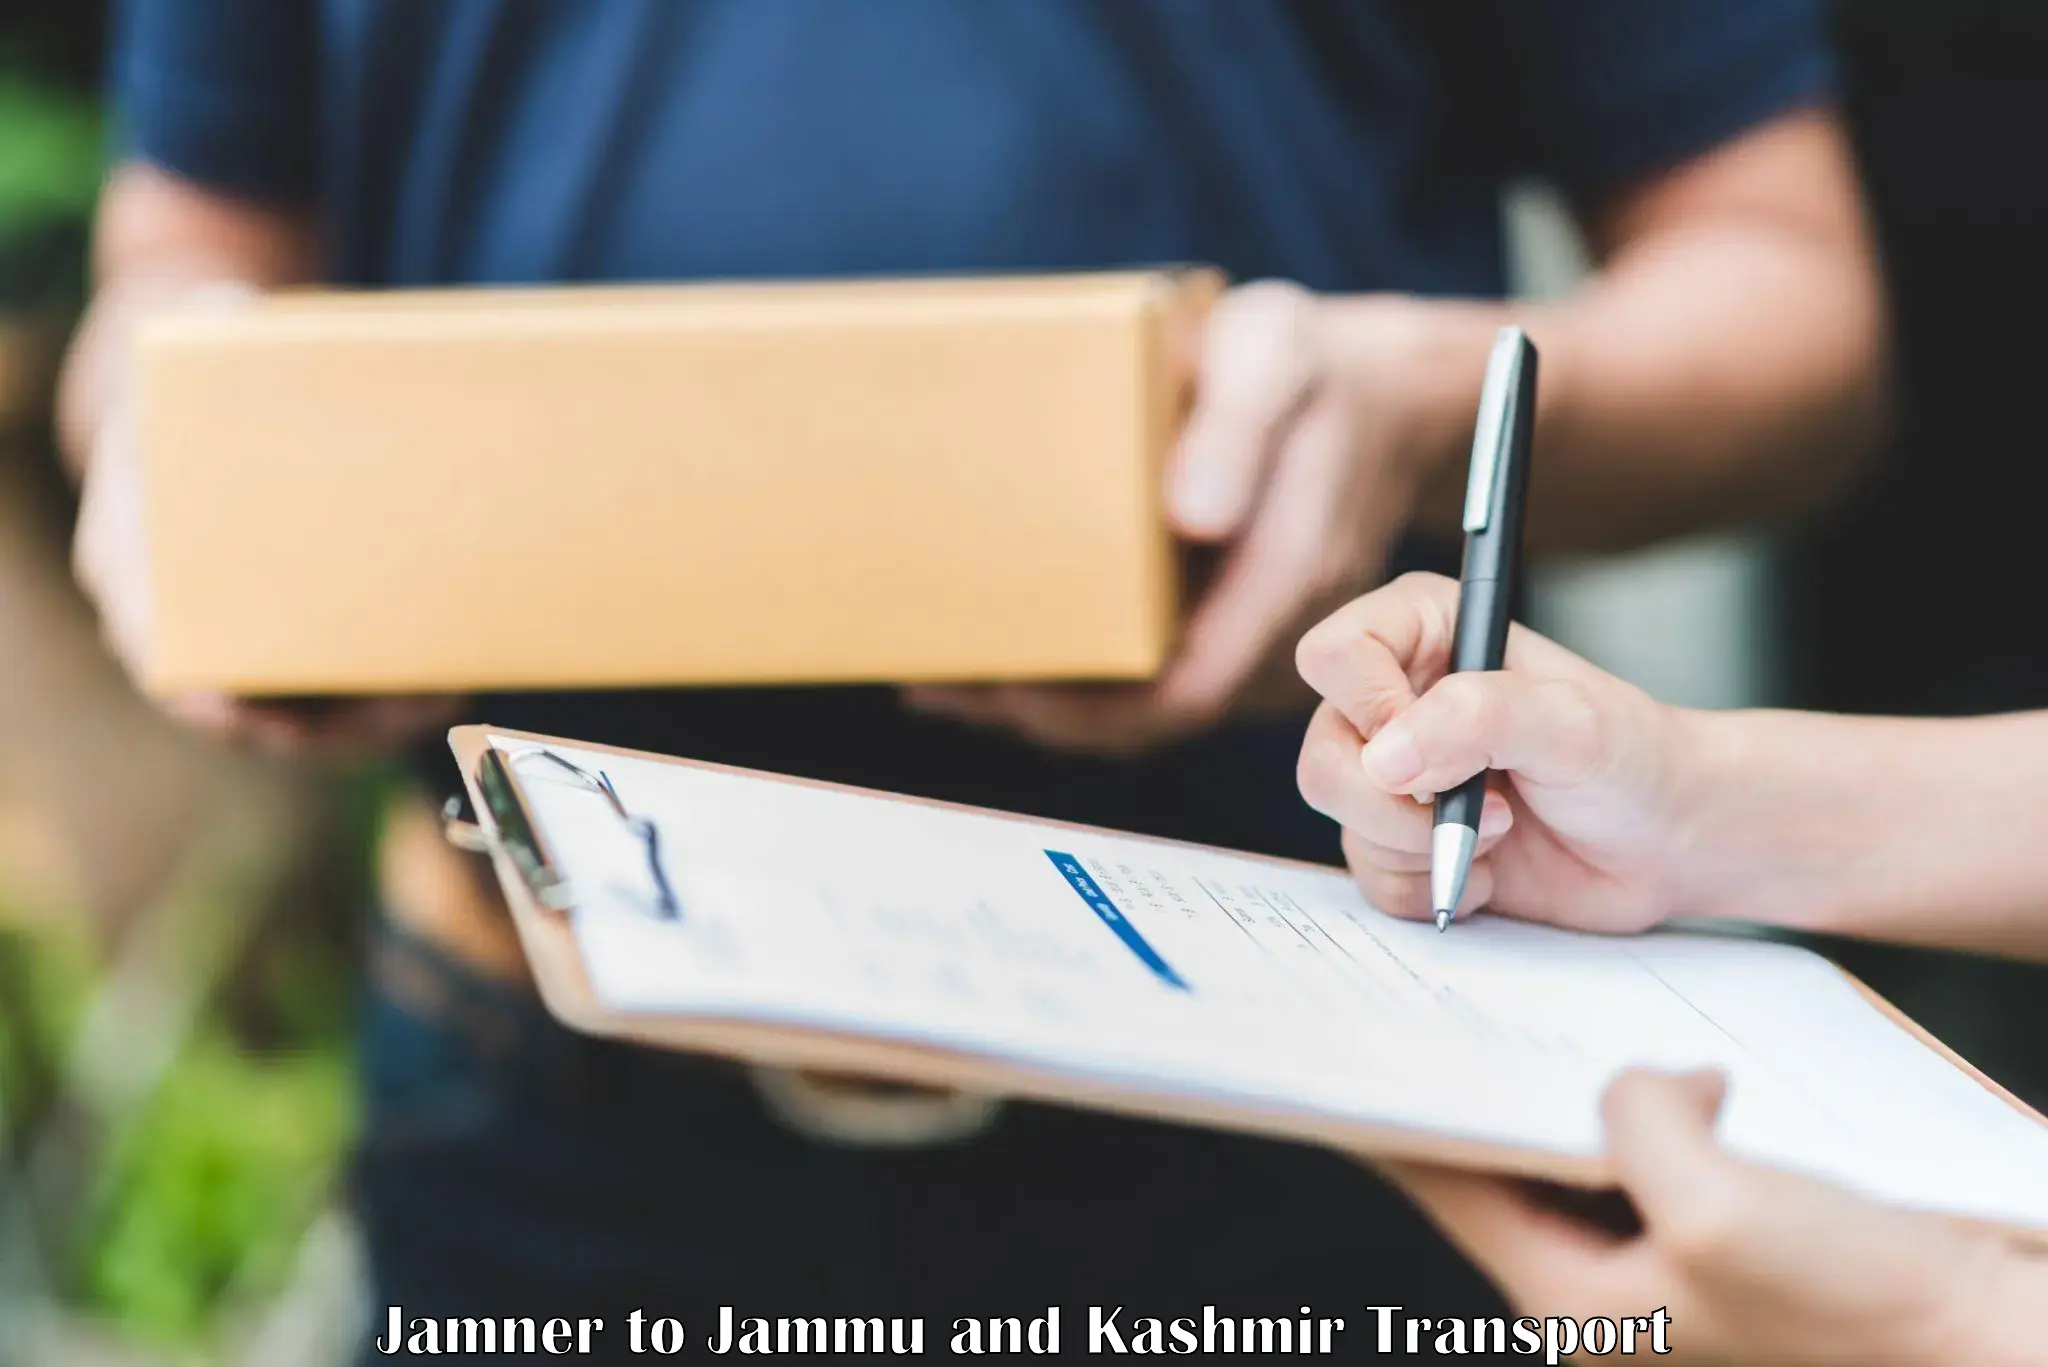 Road transport online services Jamner to Kargil